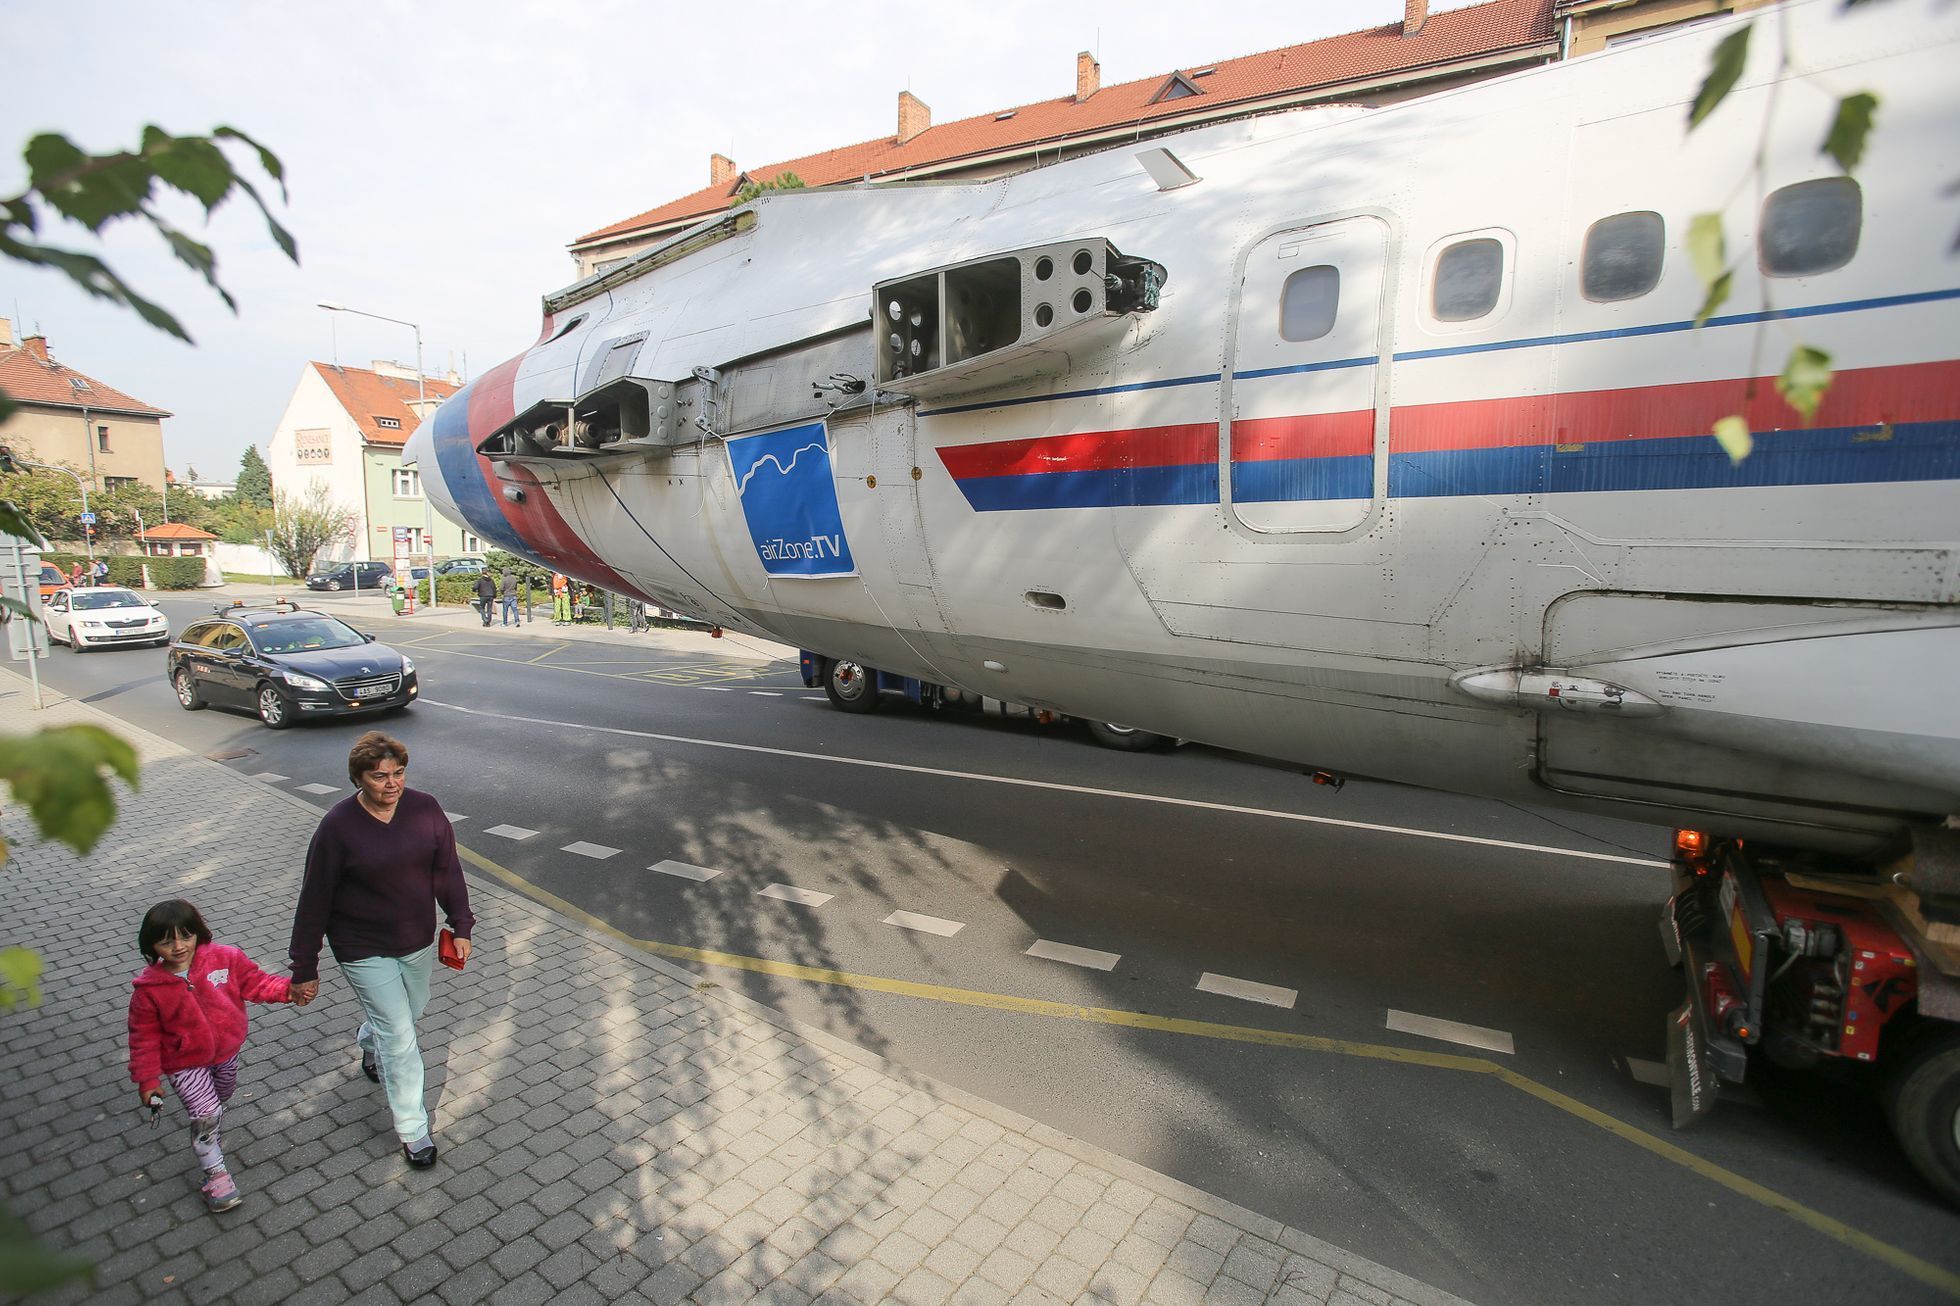 Přejezd naganského letounu Tu-154 z Kbel do Kunovic